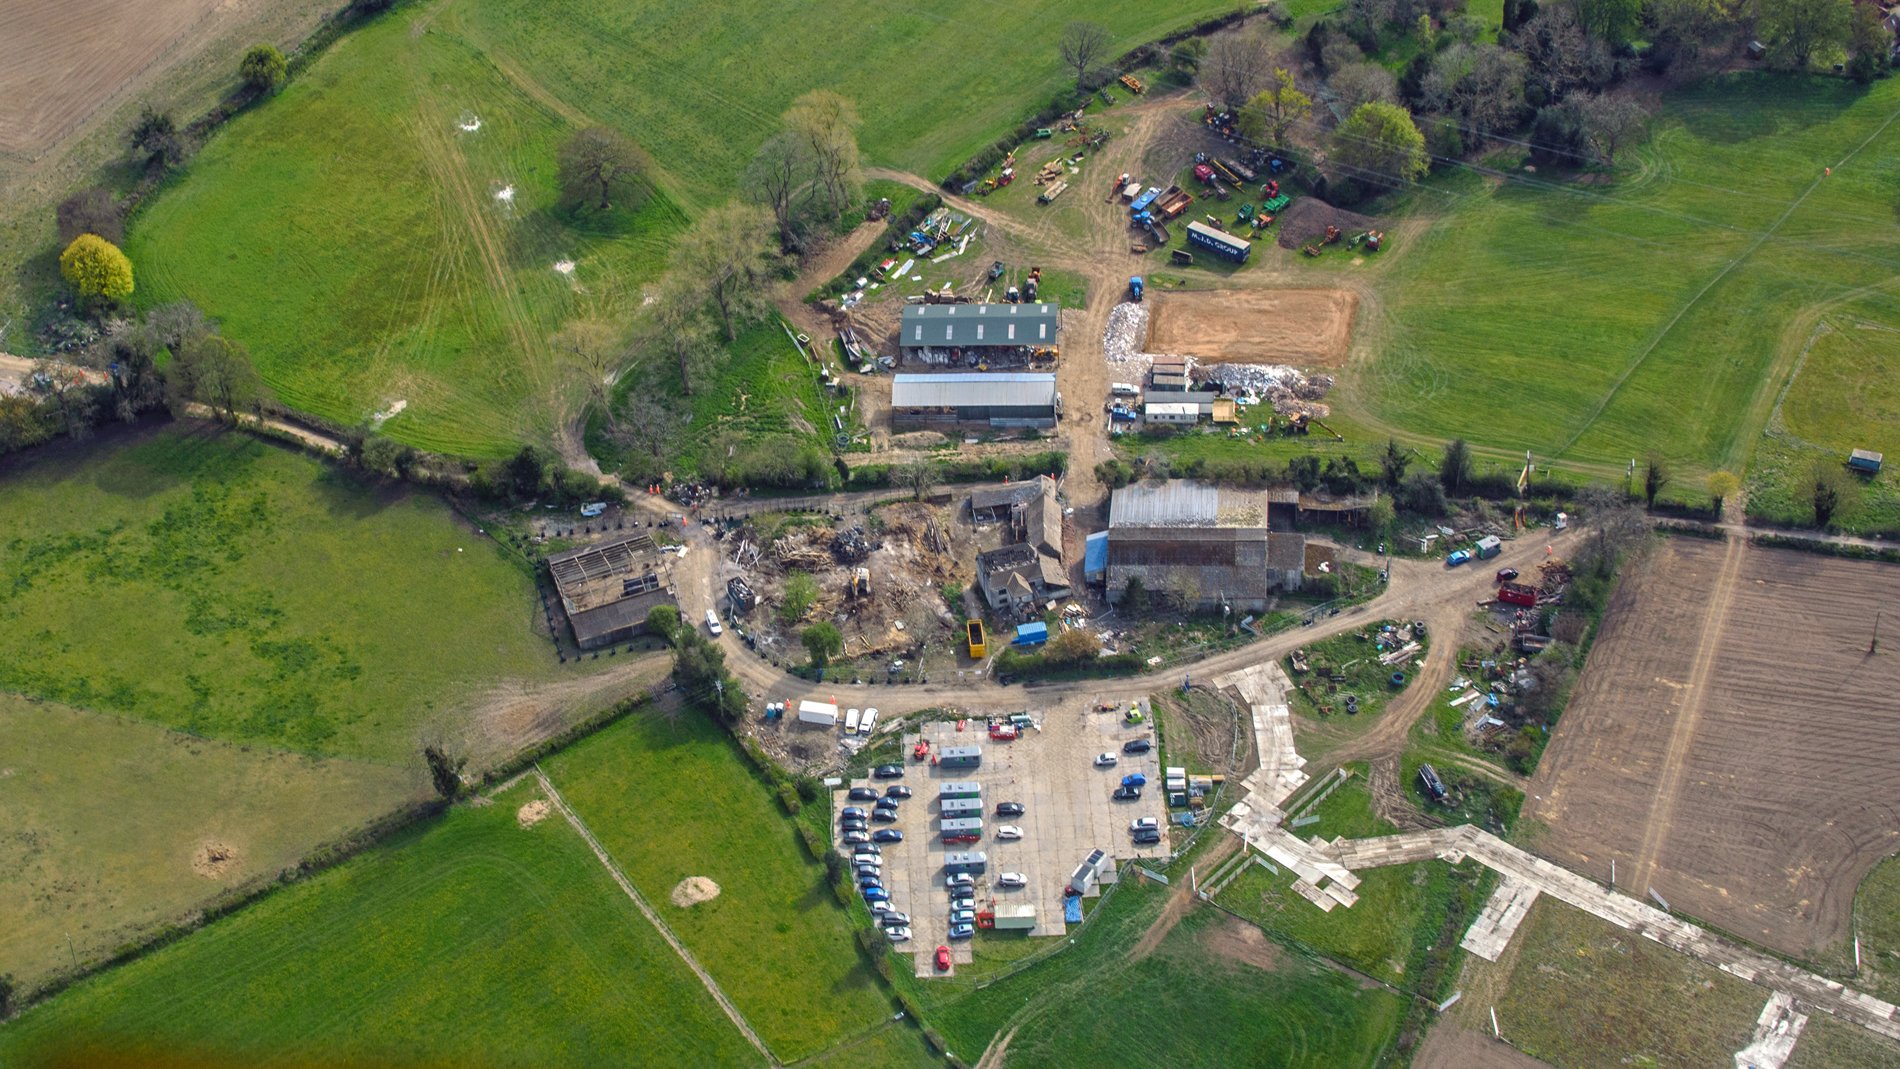 April 2021 - Durham Farm during demoltion